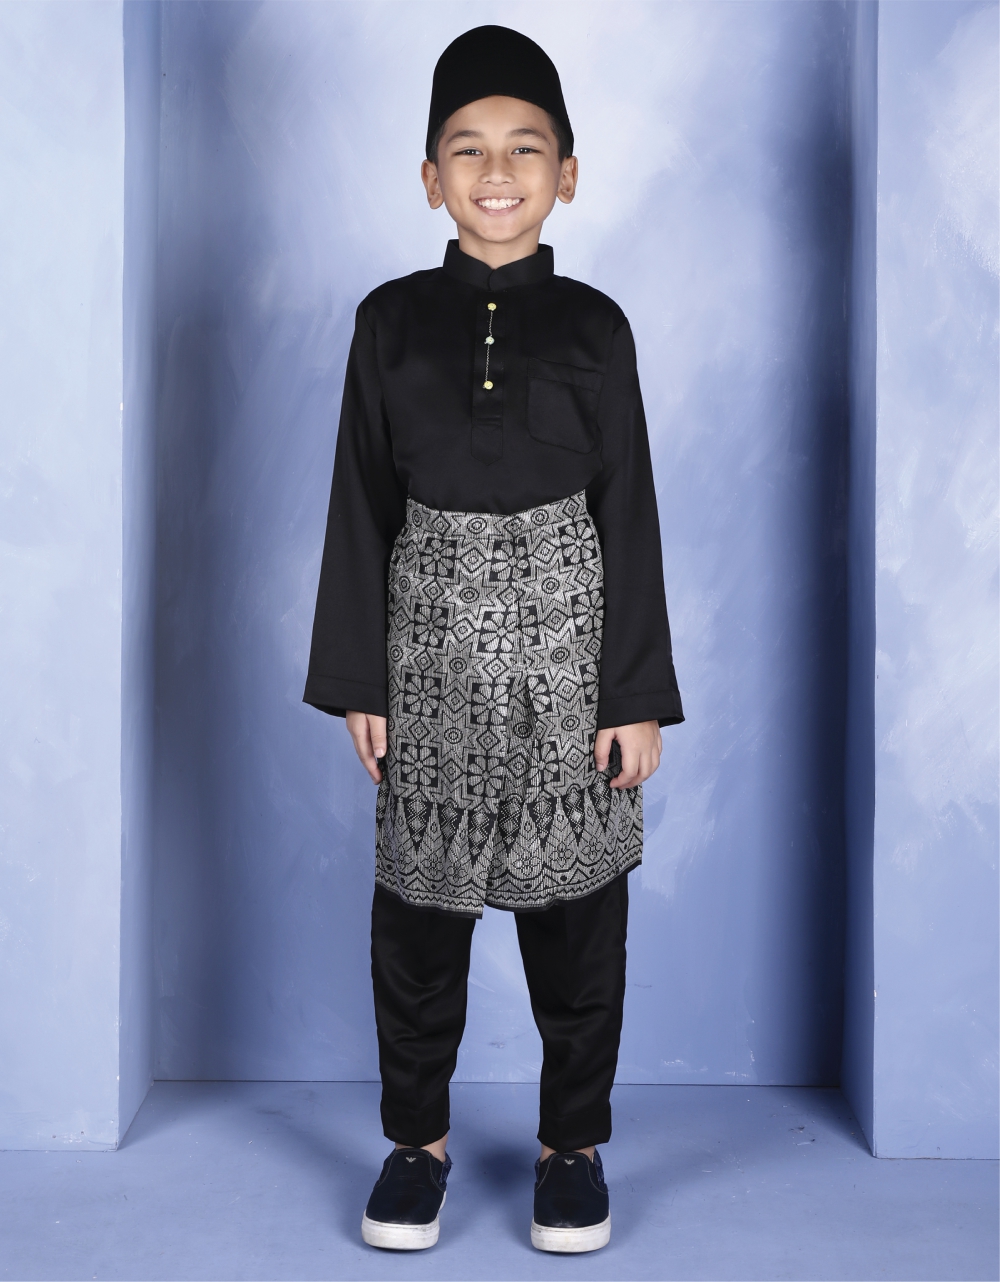 Jakel Online Online Shopping Ready To Wear Baju Melayu Baju Kurung Sampin Fabrics Kids Furnishing Songket Bridal Kids Boy New